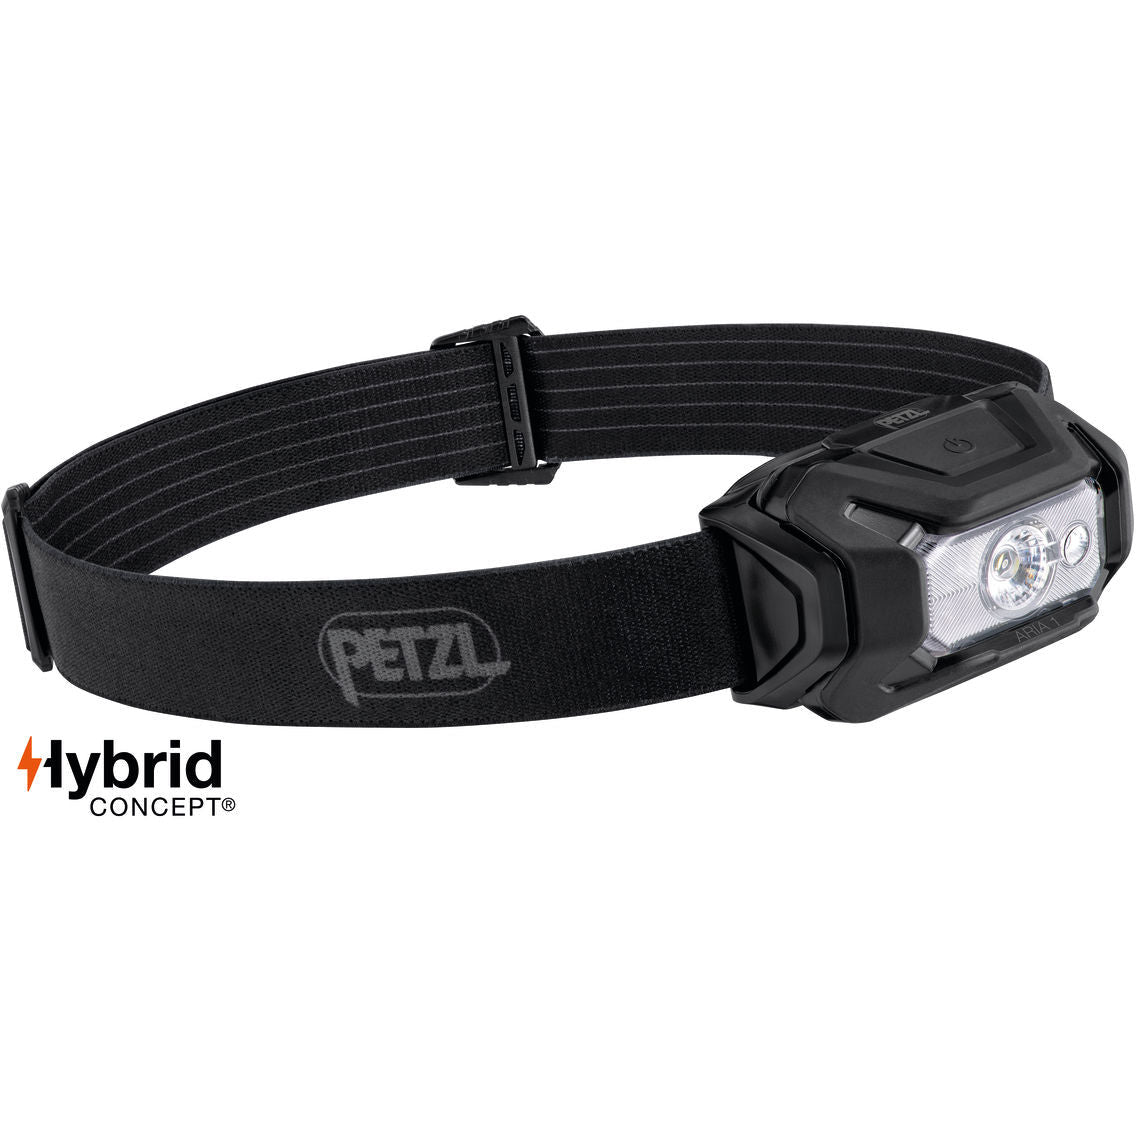 ARIA 1 RGB - פנס עבודה עמיד וקומפקטי עם תאורה לבנה או צבעונית 350 לומנס